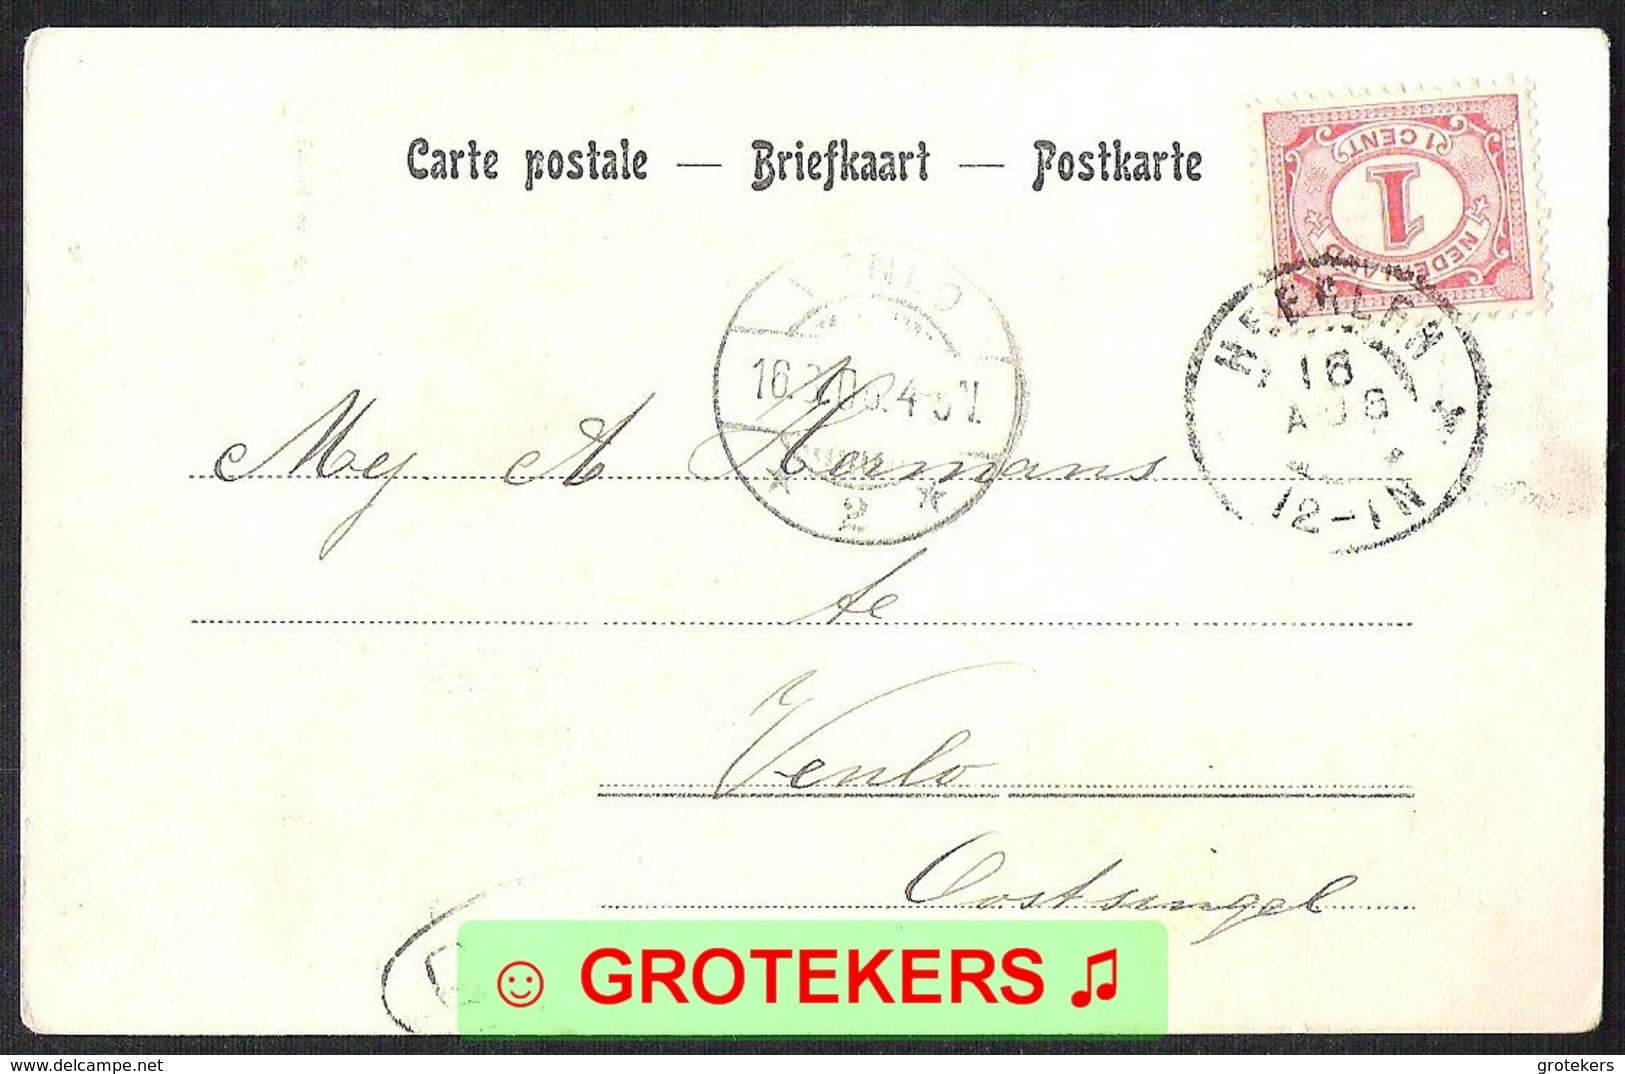 Aankomststempel Venlo 2 Langebalk Met Arcering (LBMN 0063) Op Ansicht VALKENBURG Gezicht Op De Geul 1906 LEES - Poststempels/ Marcofilie